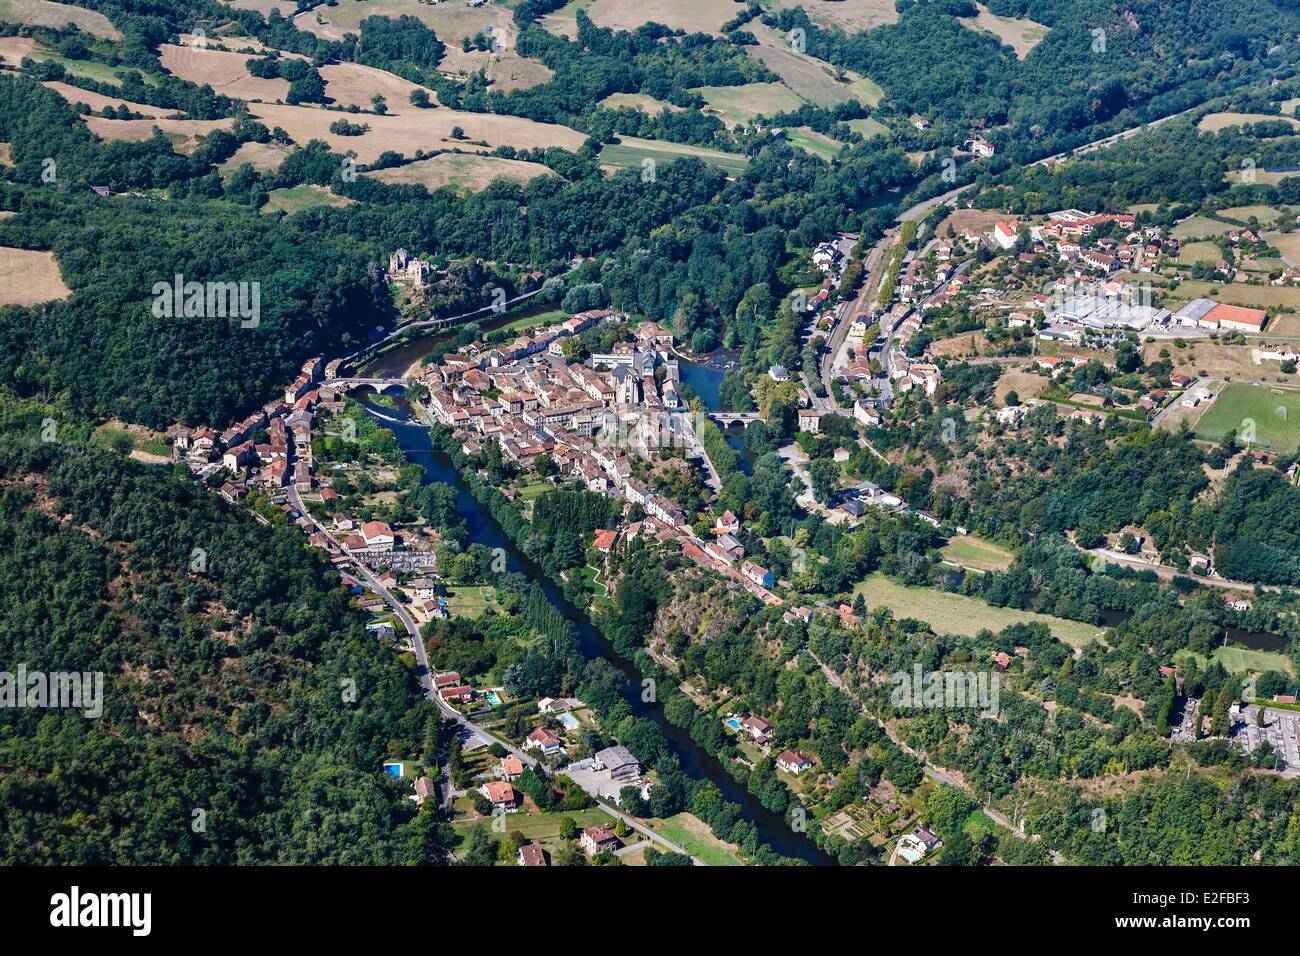 La France, Tarn et Garonne, Laguepie, le village au confluent des rivières Viaur et Aveyron (vue aérienne) Banque D'Images